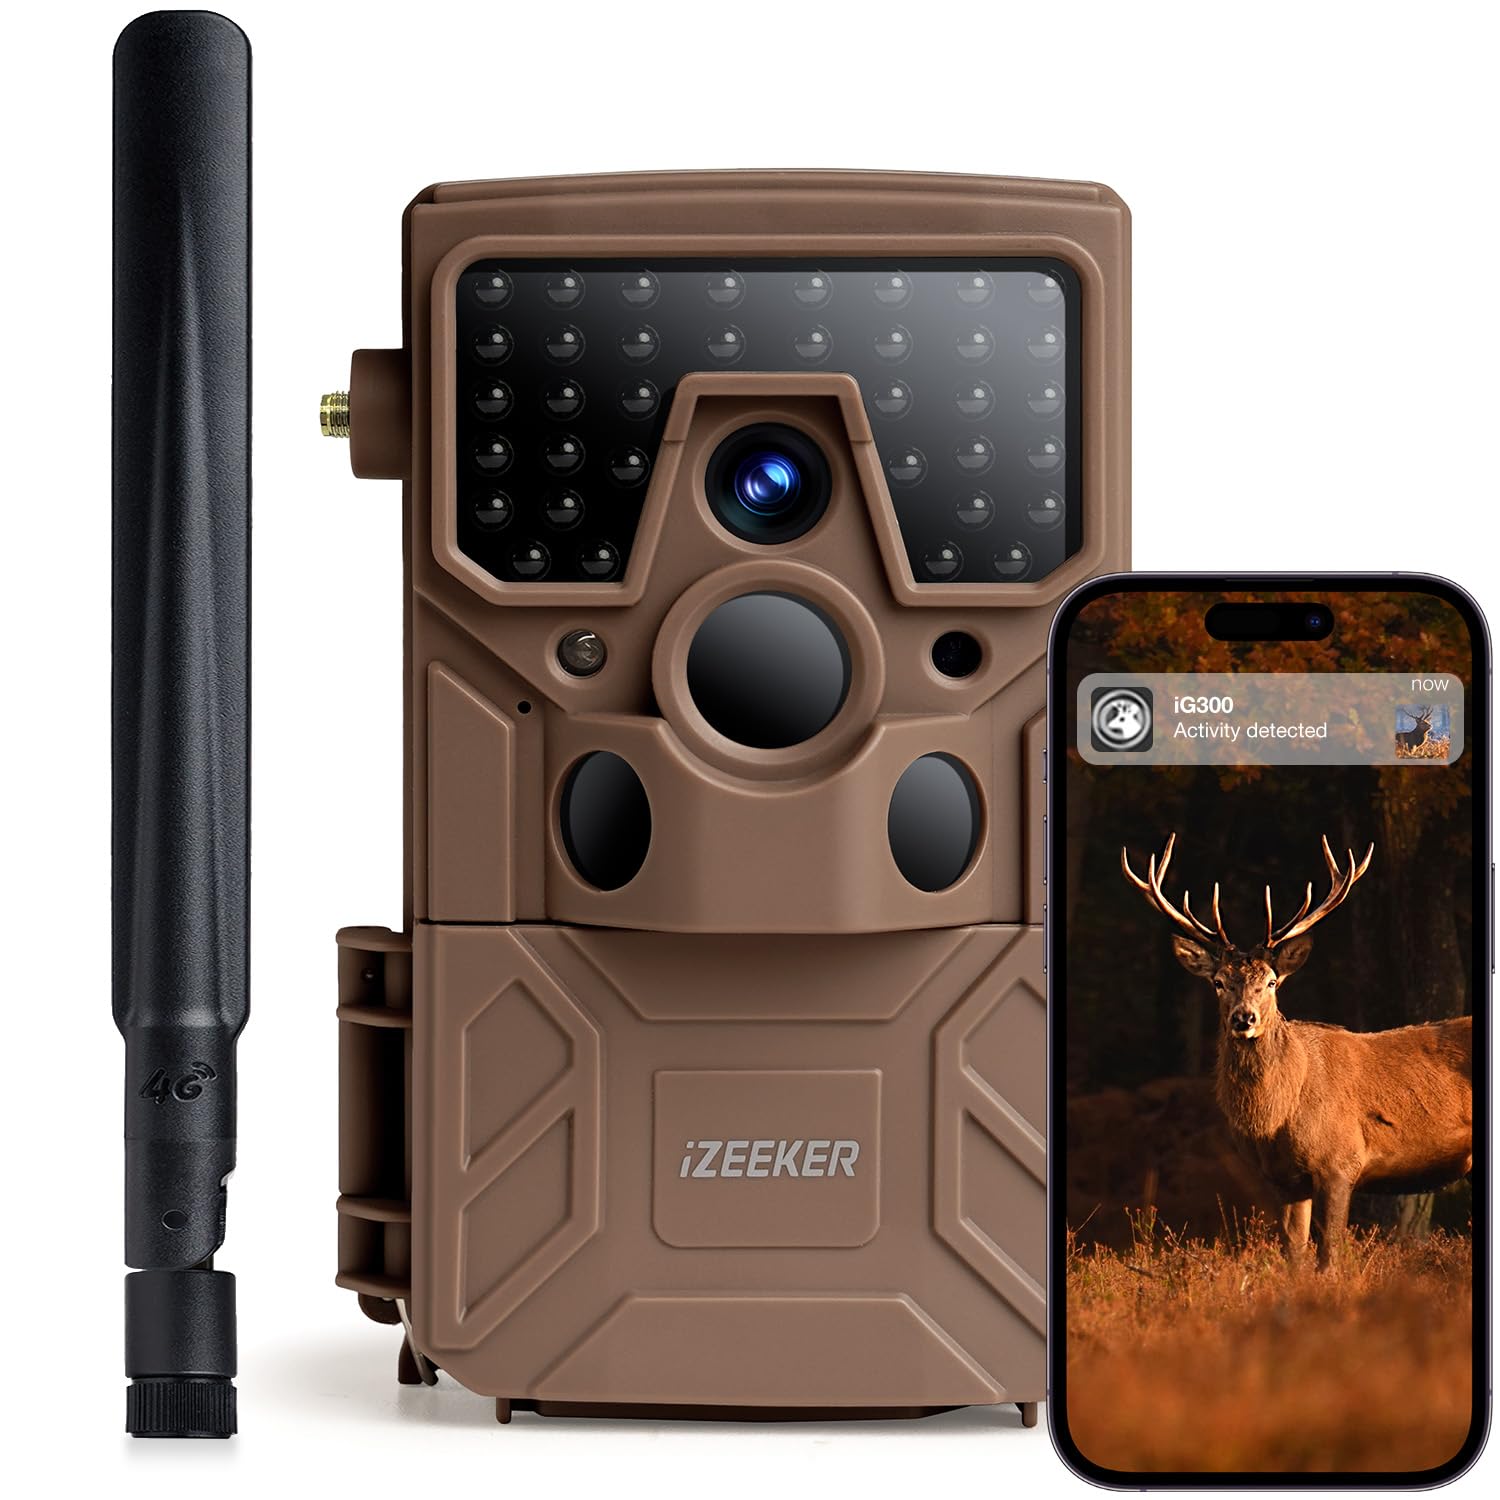 iZEEKER 4G LTE Wildkamera, 2K 14MP mit 940nm Unsichtbaren LEDs, Echtzeit-Benachrichtigung, 120° Weitwinkel, 0.1s Auslösezeit mit SIM-Karte & 32 GB SD-Karte für die Überwachung der Tierwelt